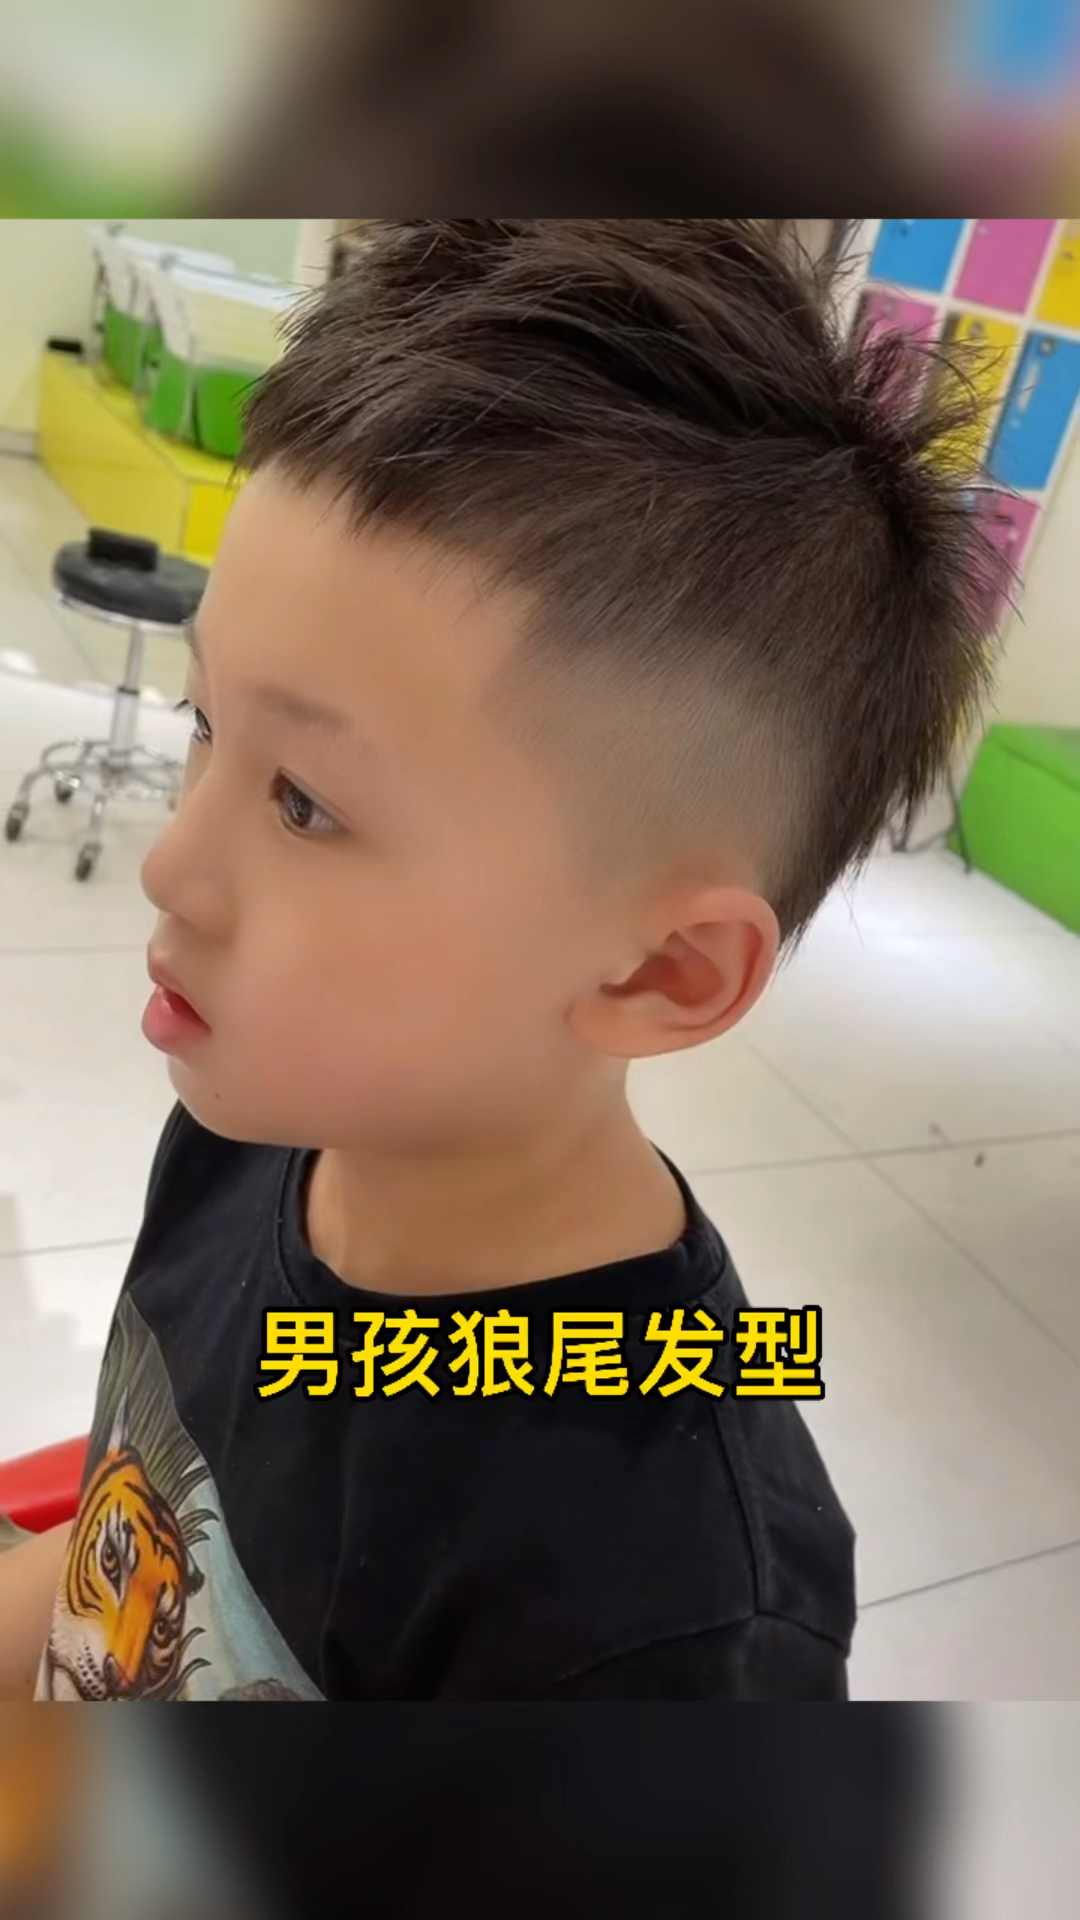 儿童理发儿童理发生个男孩剪个狼尾发型吧